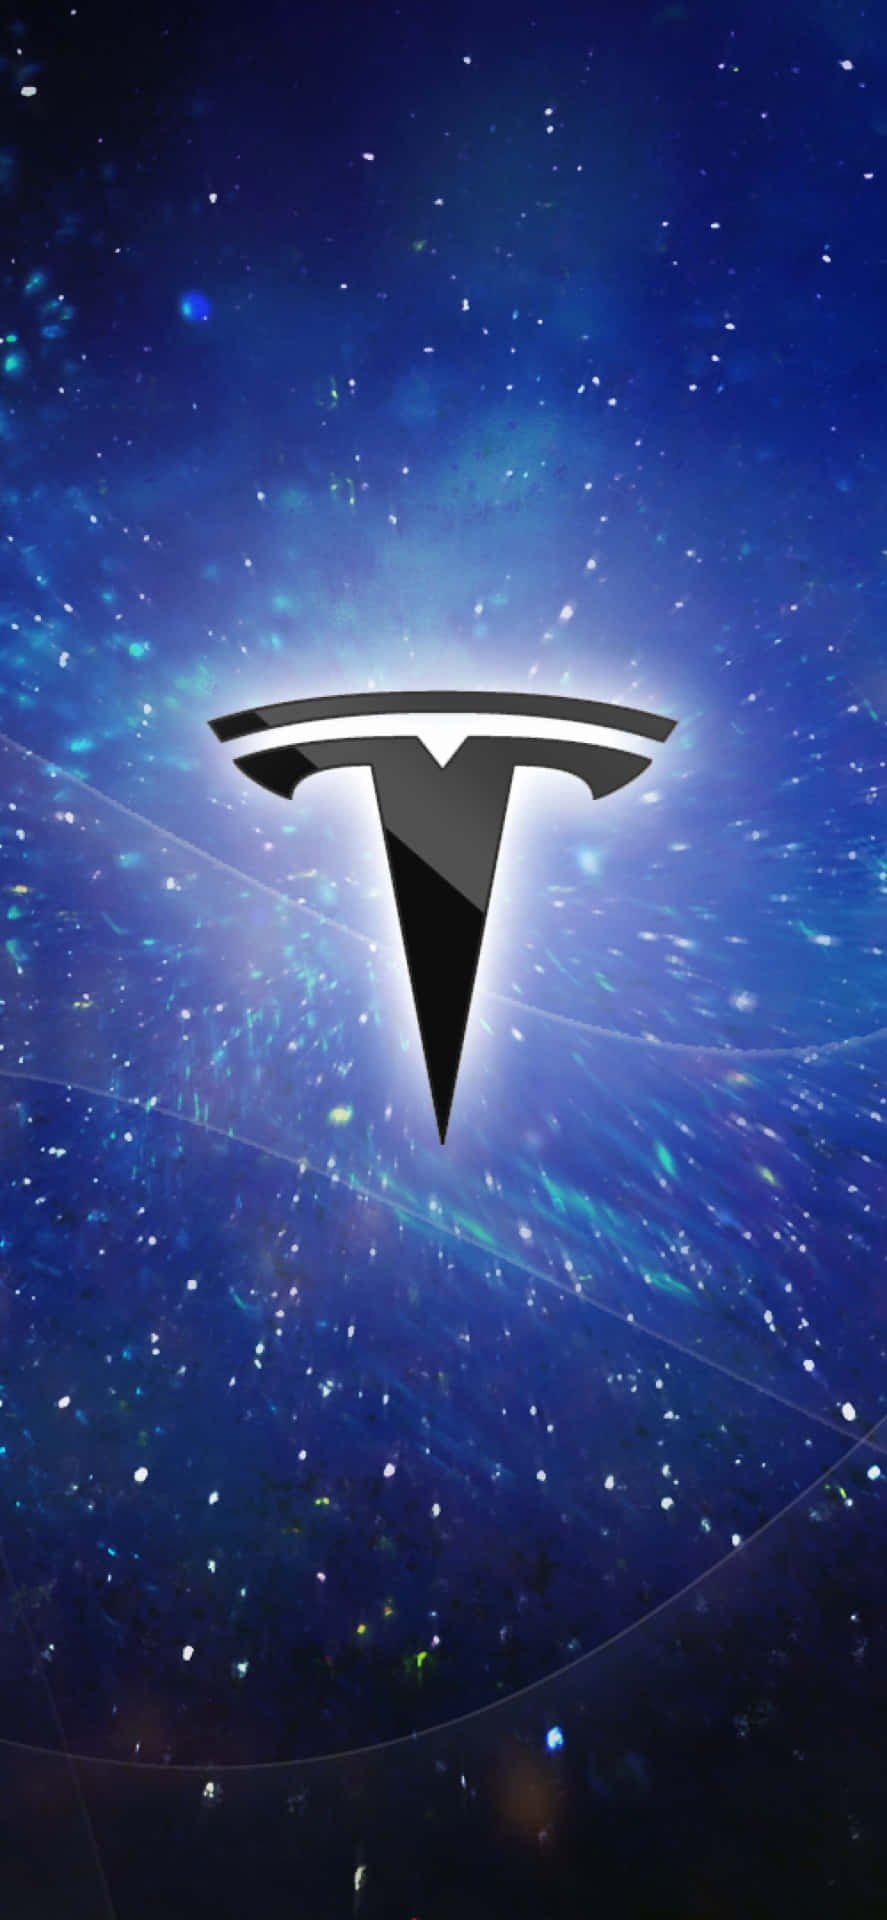 Papelde Parede Do Logo Da Tesla Em 4k. Papel de Parede